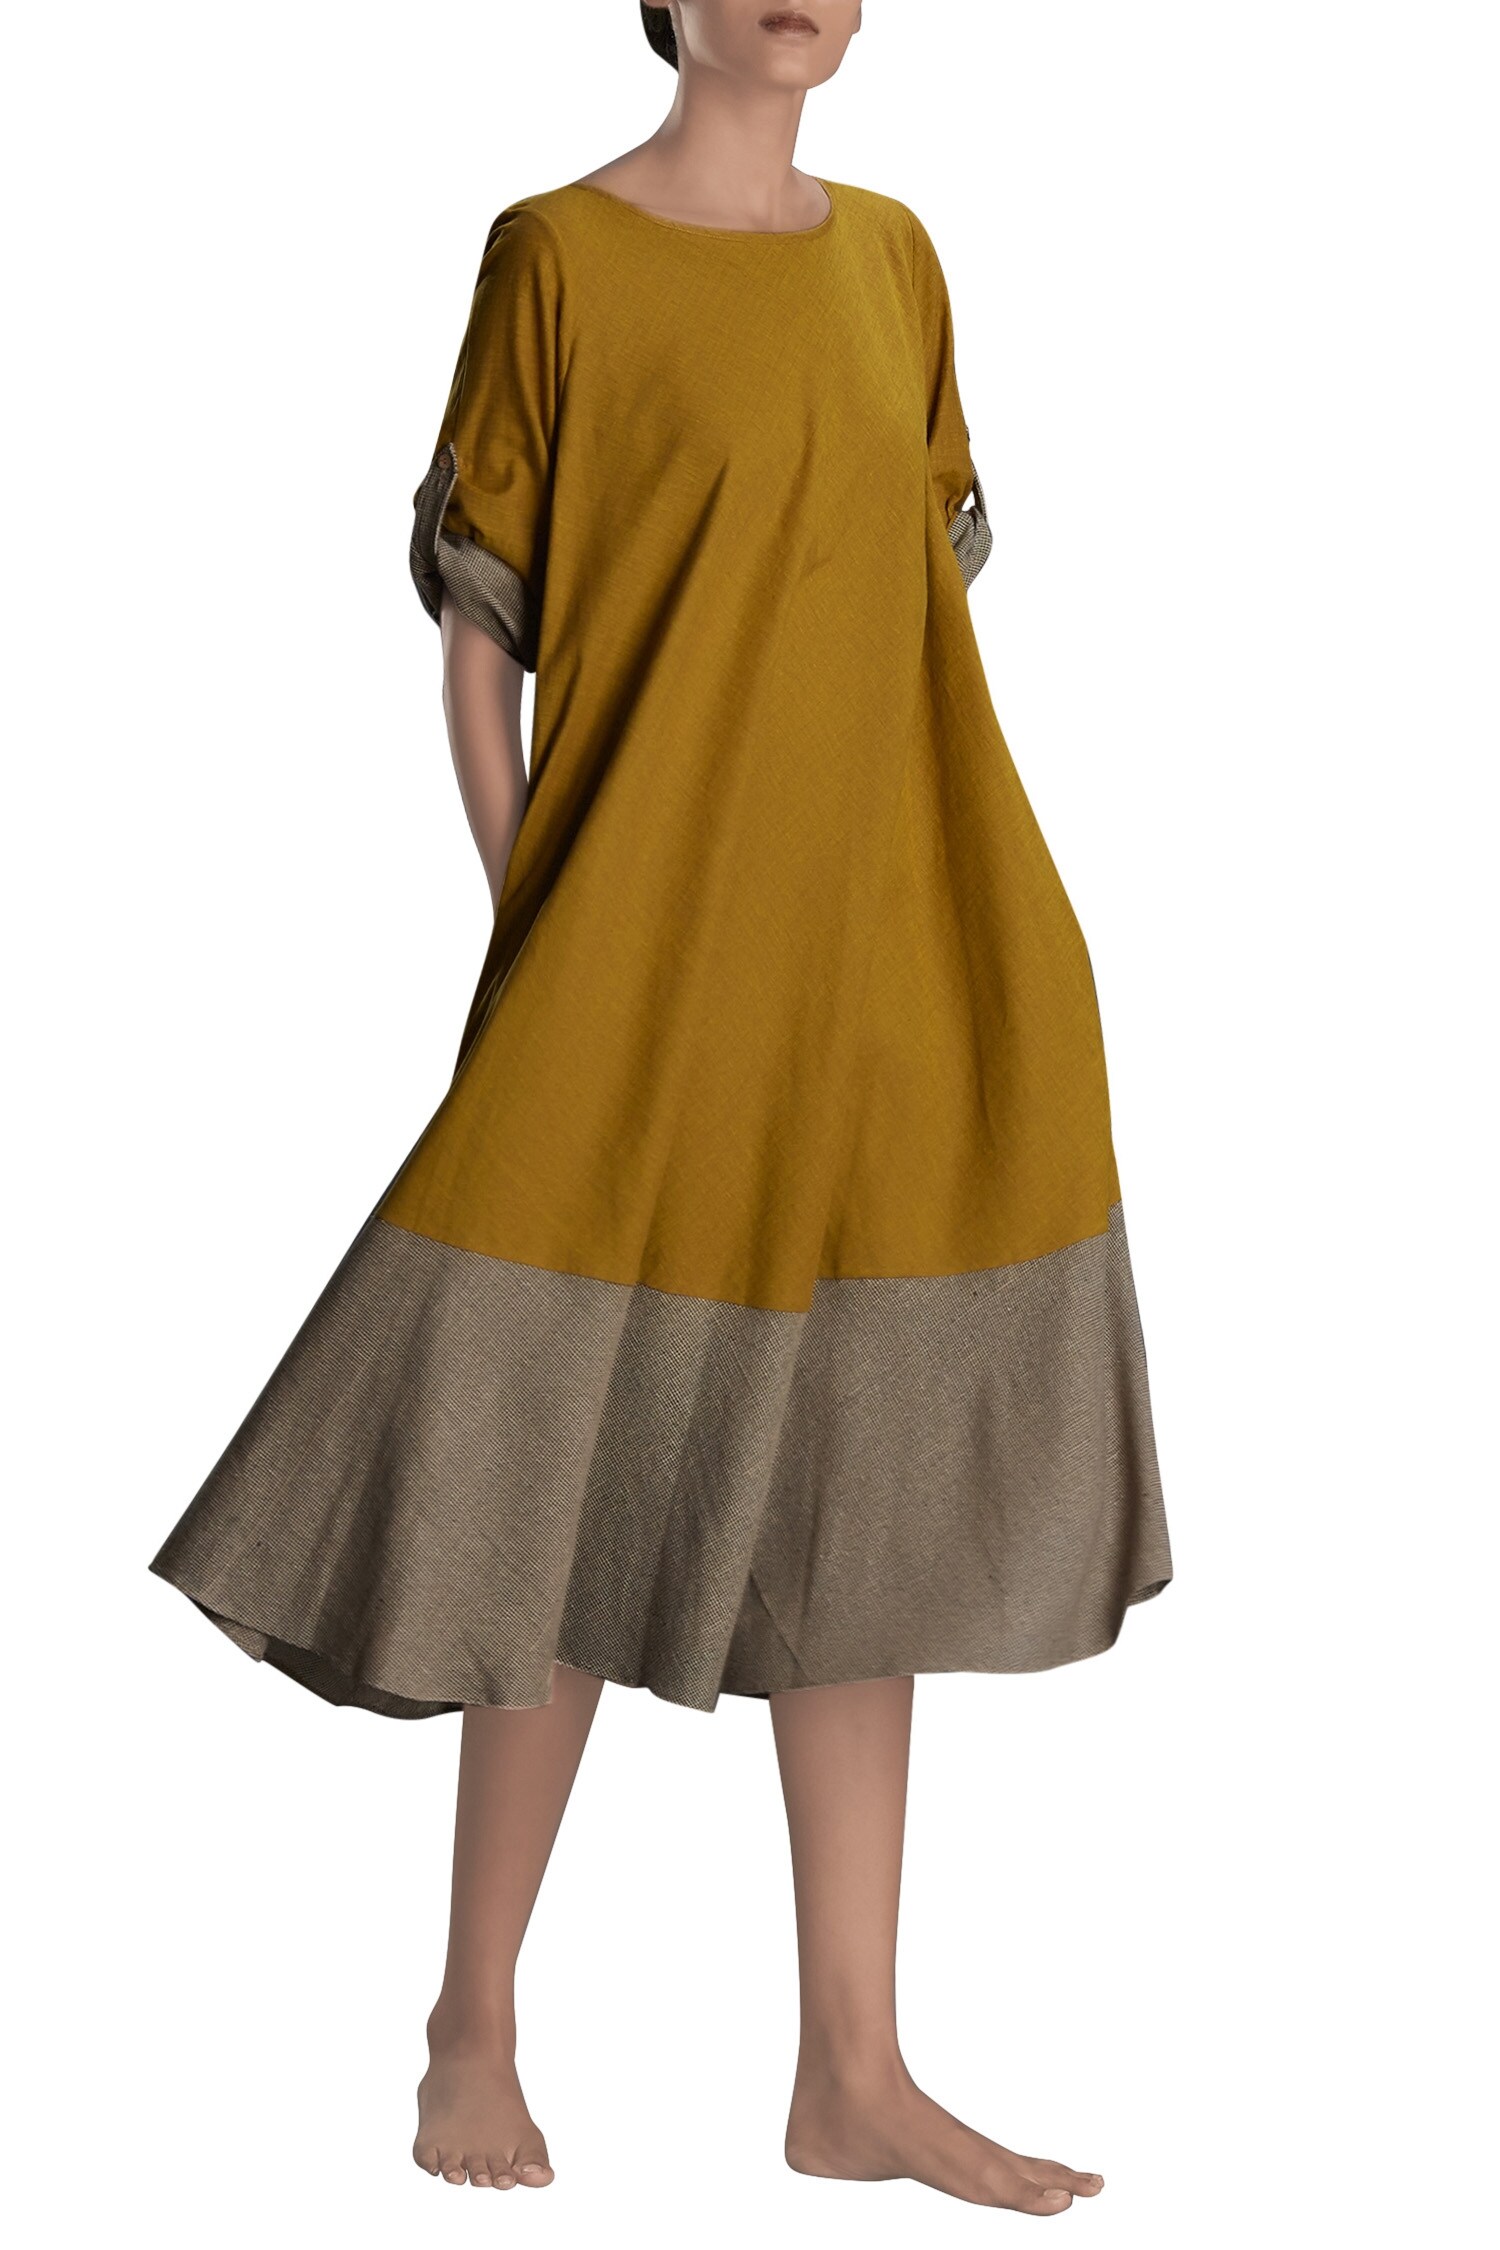 Buy Mati Yellow Mustard And Khaki Flared Dress Online | Aza Fashions